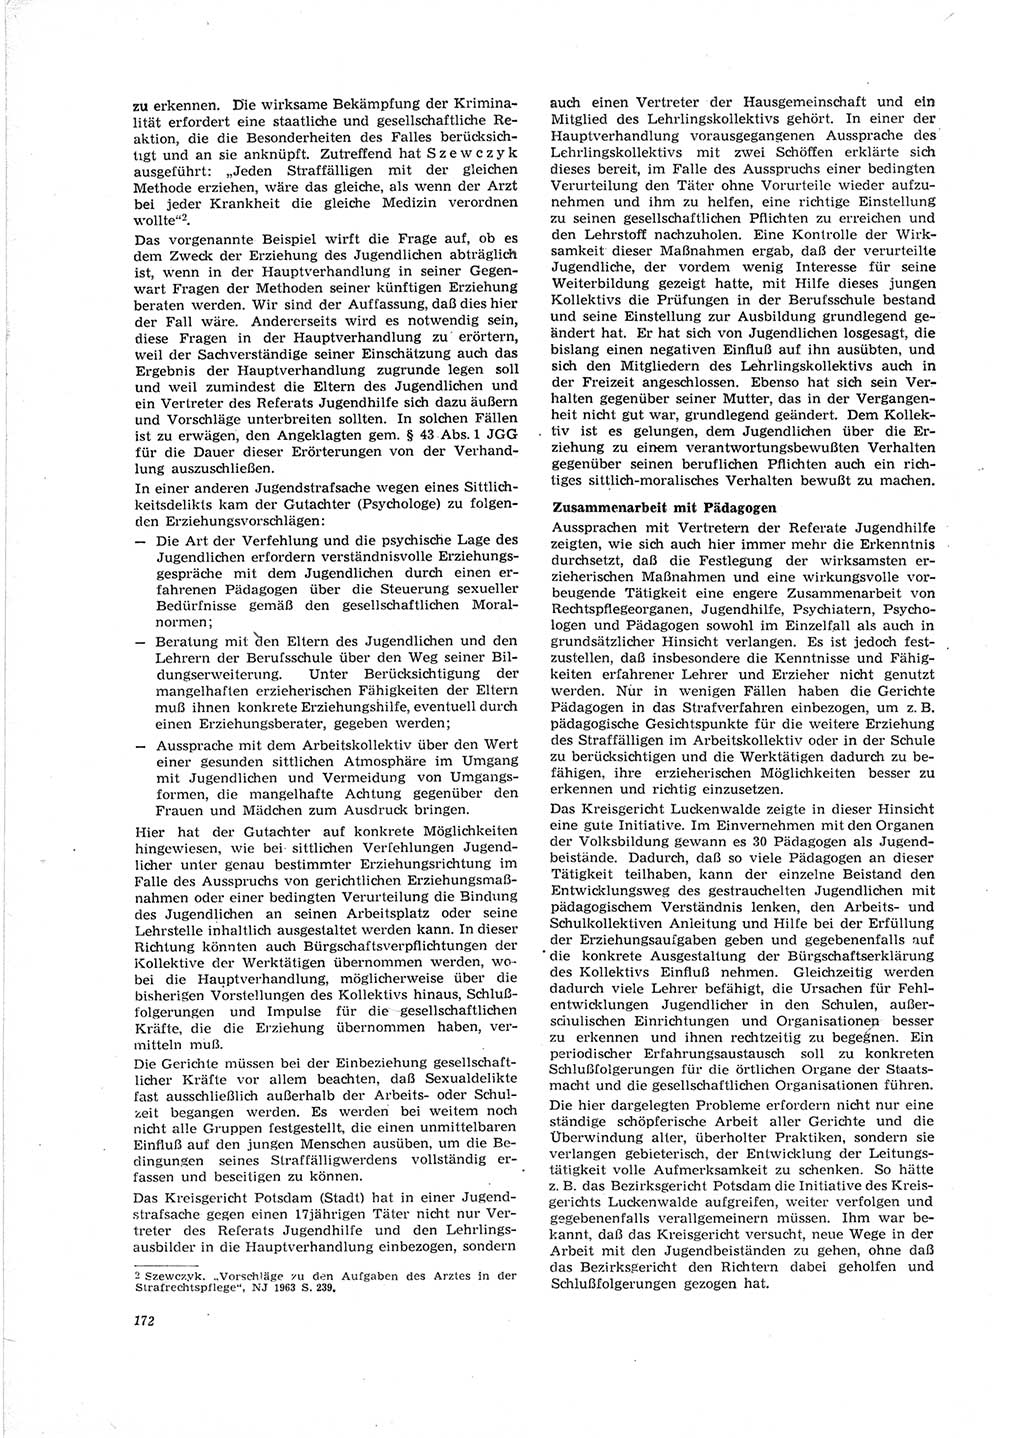 Neue Justiz (NJ), Zeitschrift für Recht und Rechtswissenschaft [Deutsche Demokratische Republik (DDR)], 19. Jahrgang 1965, Seite 172 (NJ DDR 1965, S. 172)